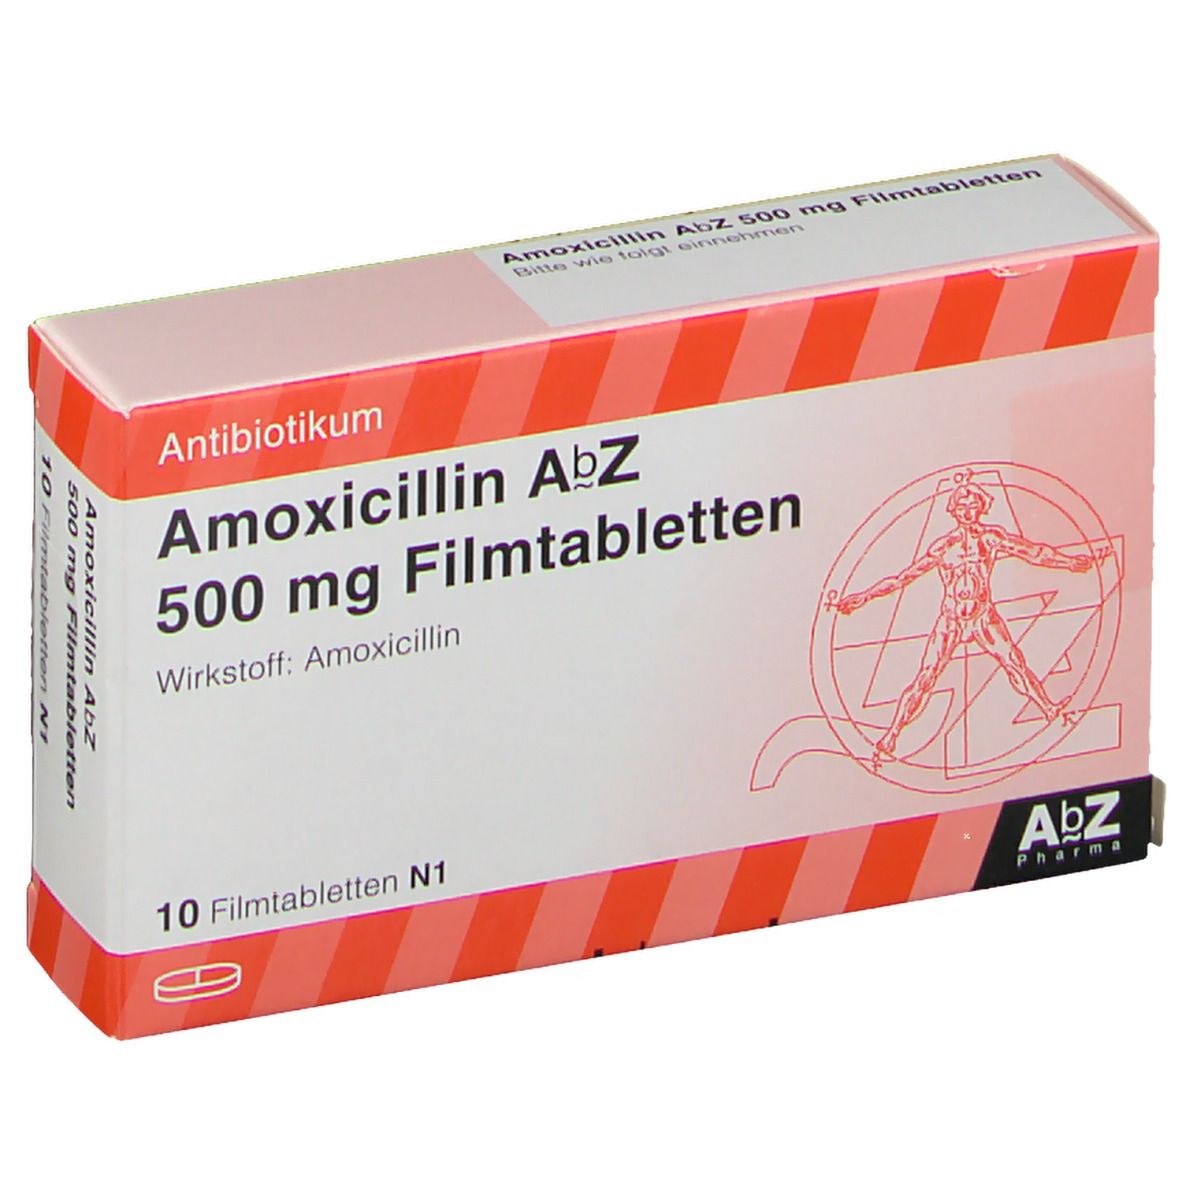 Amoxicillin AbZ 500 mg